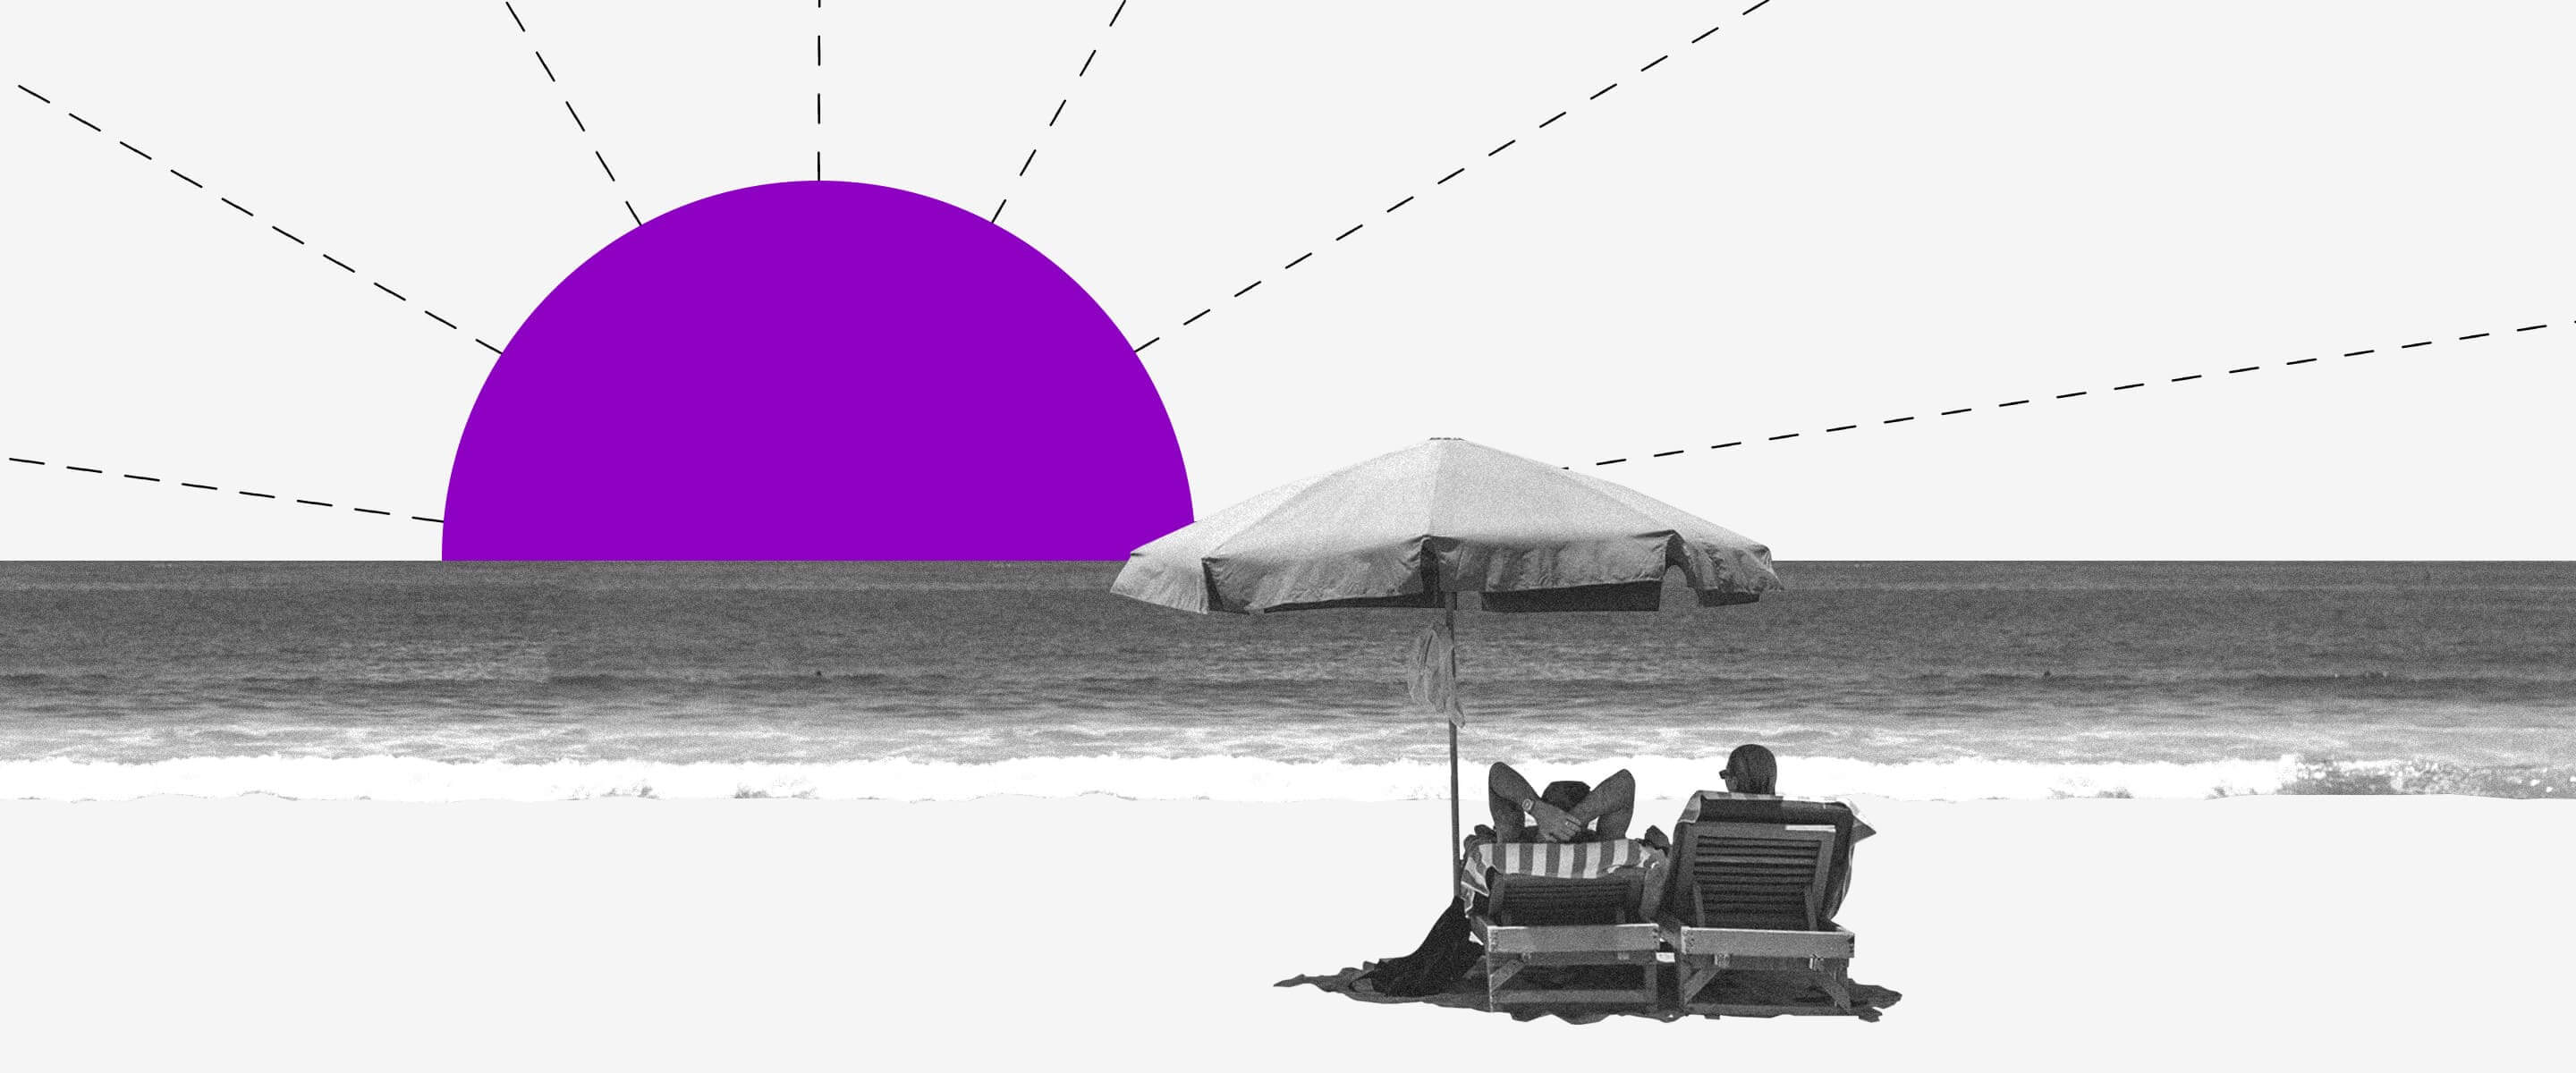 Clientes Nubank disfrutan de la libertad financiera en la playa, mientras observan un sol de color morado.